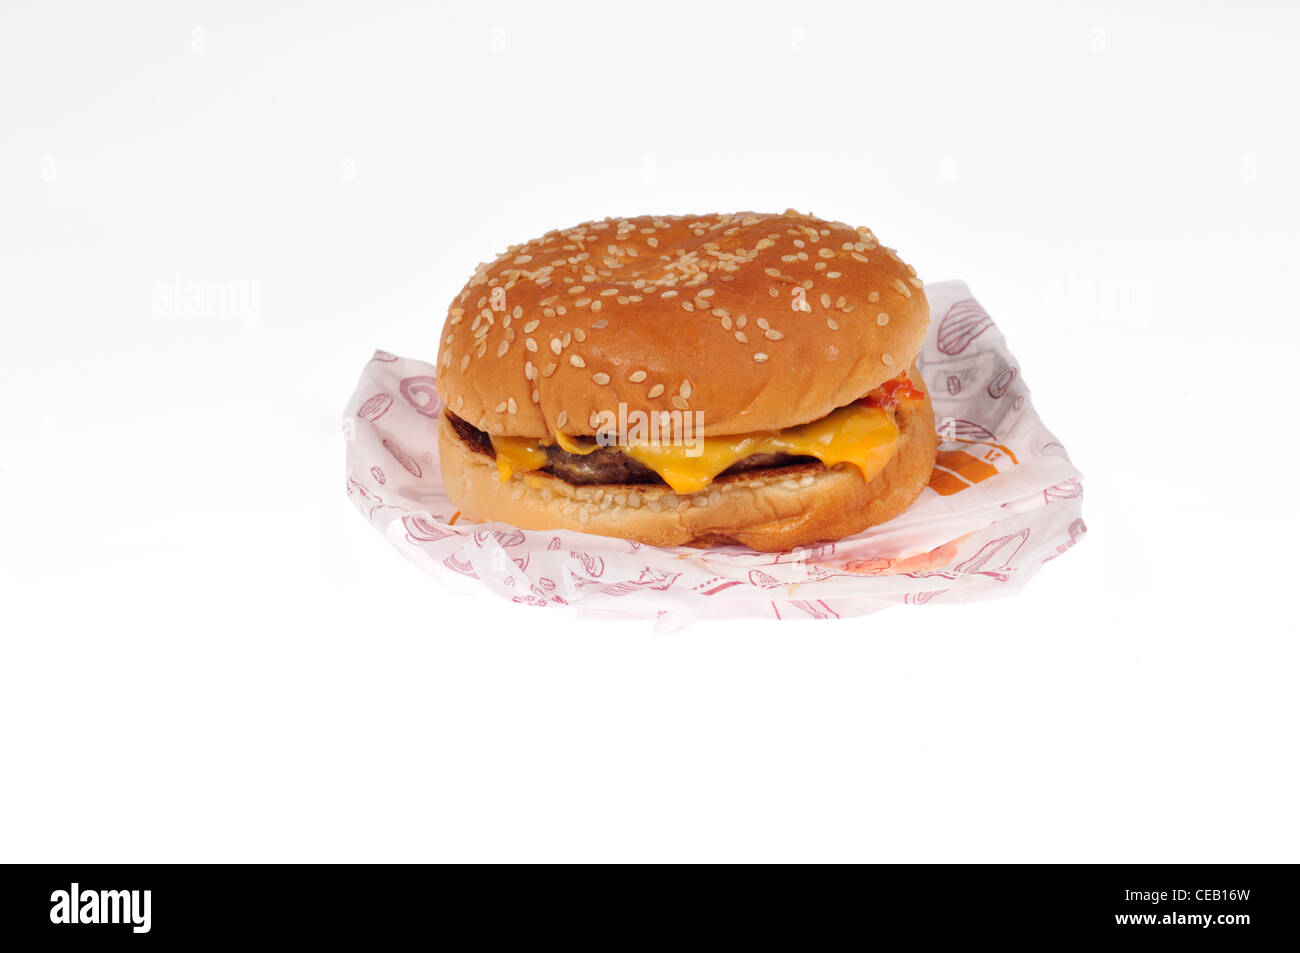 Burger King doppelten Cheeseburger mit Wrapper Verpackung auf weißem Hintergrund Ausschnitt. Stockfoto